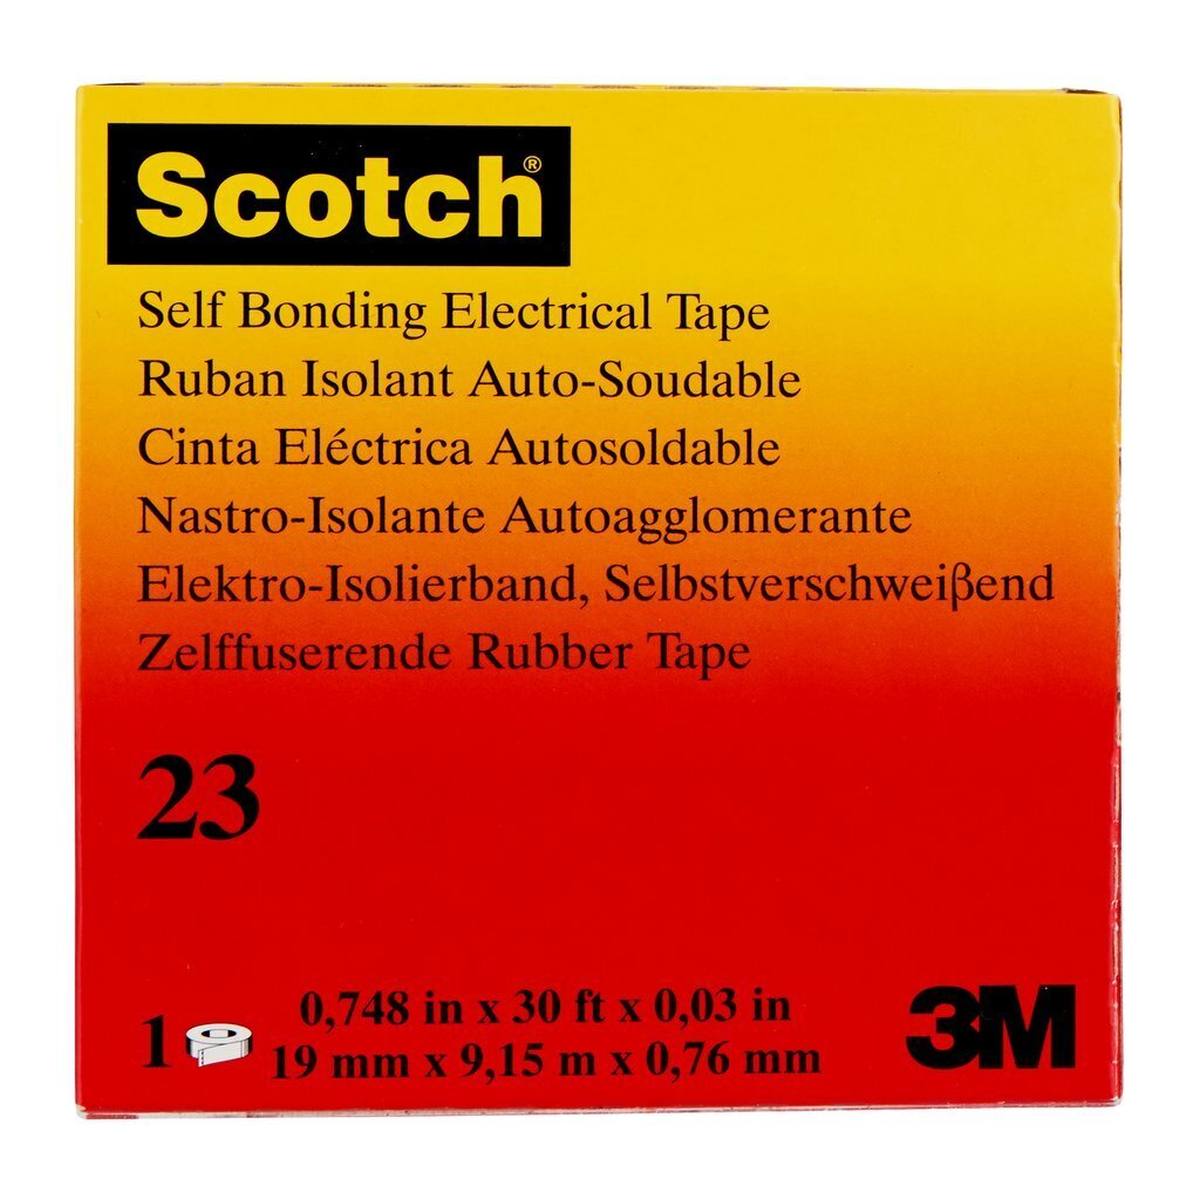 3M Scotch 23 Zelfdichtende ethyleenpropyleen rubbertape, 19 mm x 9,15 m